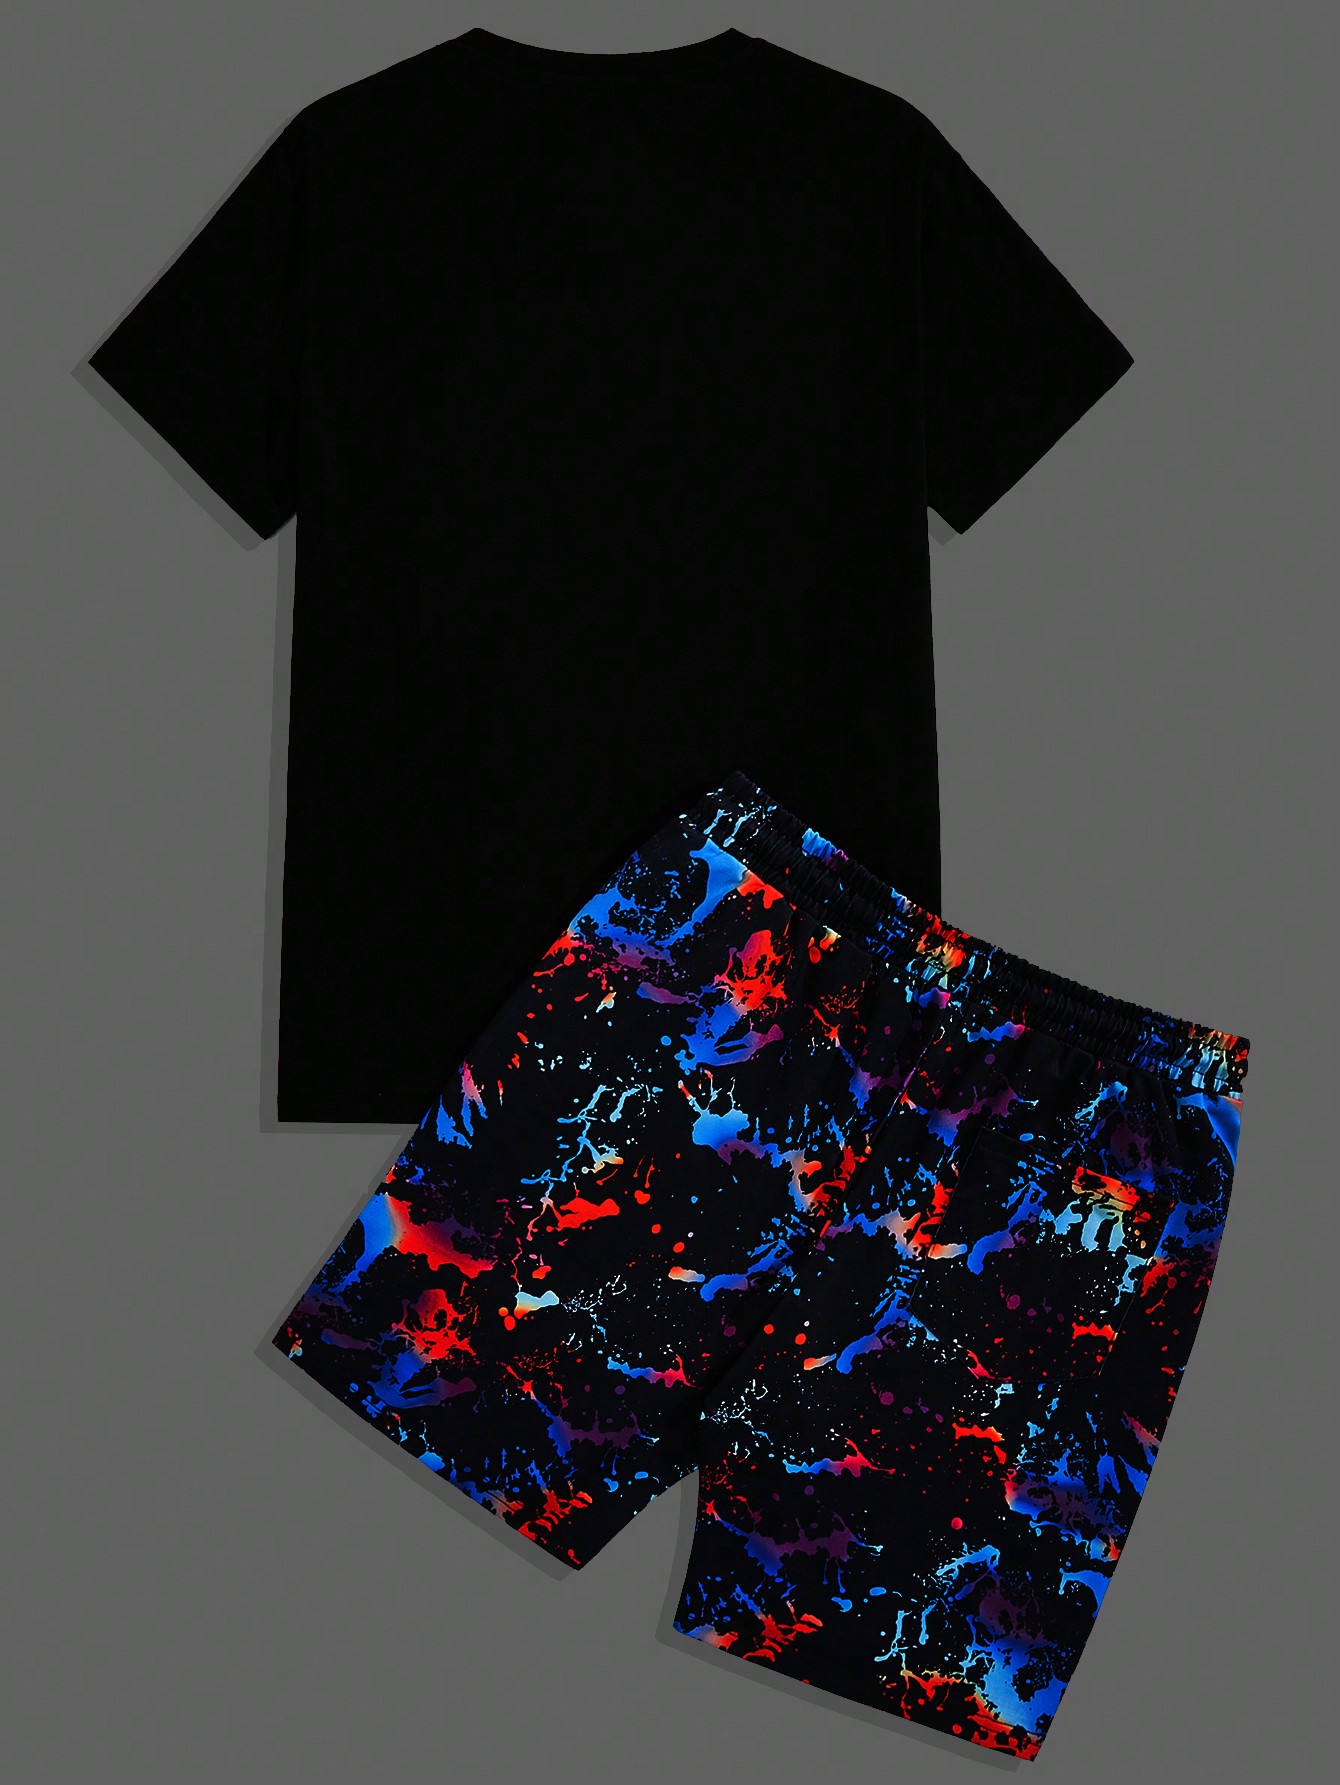 Мужская трикотажная повседневная футболка Manfinity EMRG с короткими рукавами и принтом «Светящийся медведь» и шорты с чернильным принтом, синий